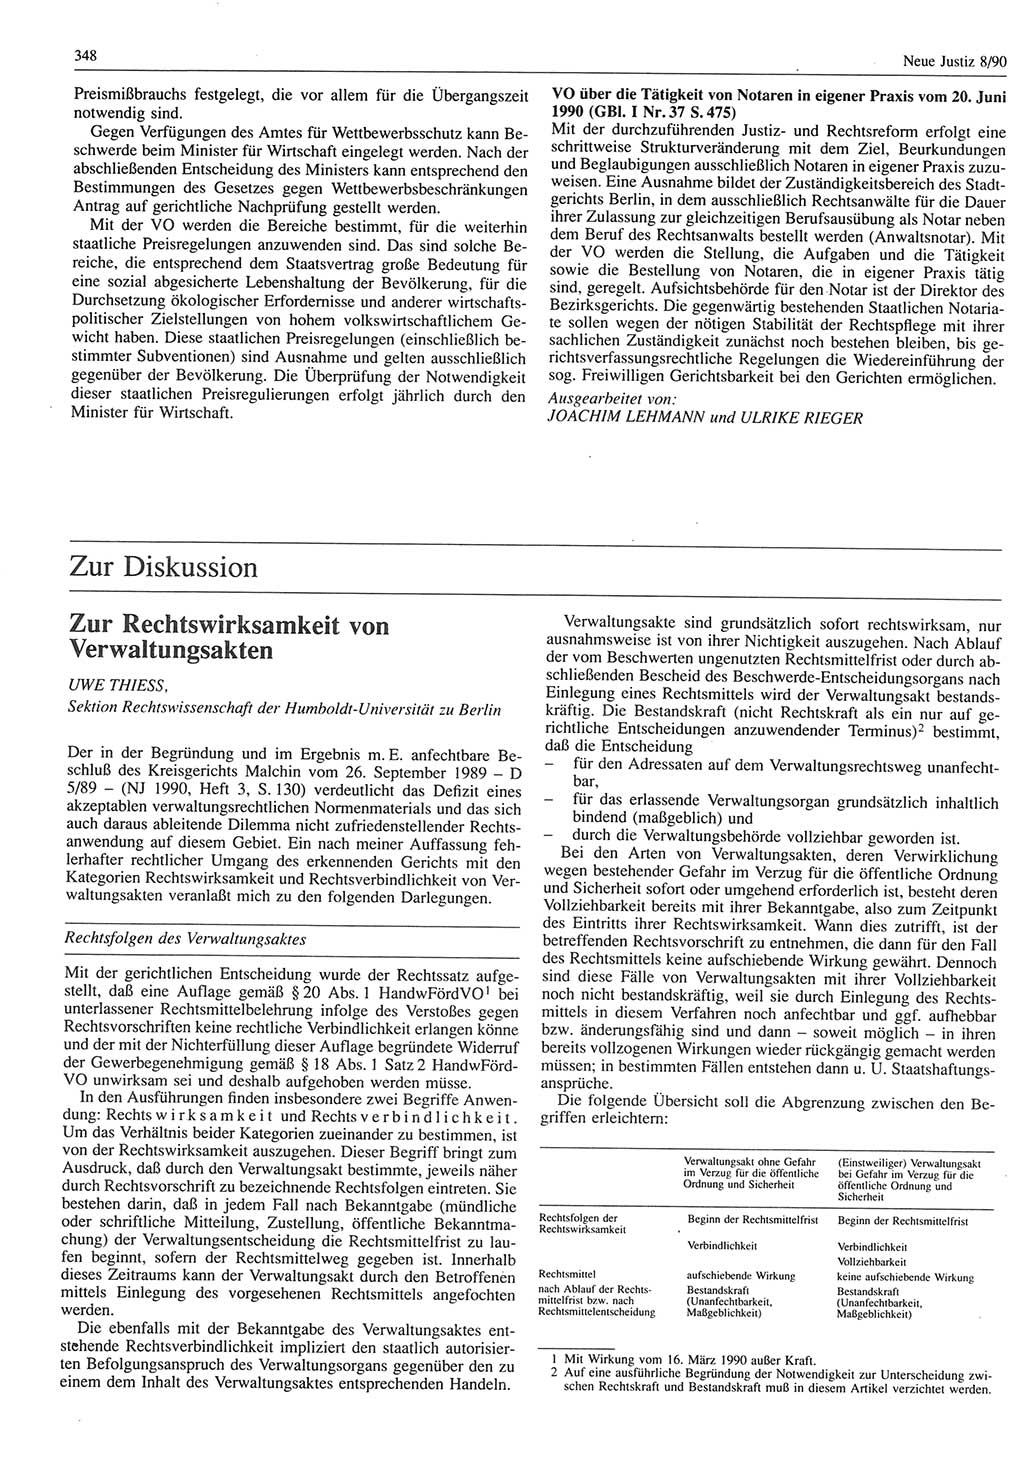 Neue Justiz (NJ), Zeitschrift für Rechtsetzung und Rechtsanwendung [Deutsche Demokratische Republik (DDR)], 44. Jahrgang 1990, Seite 348 (NJ DDR 1990, S. 348)